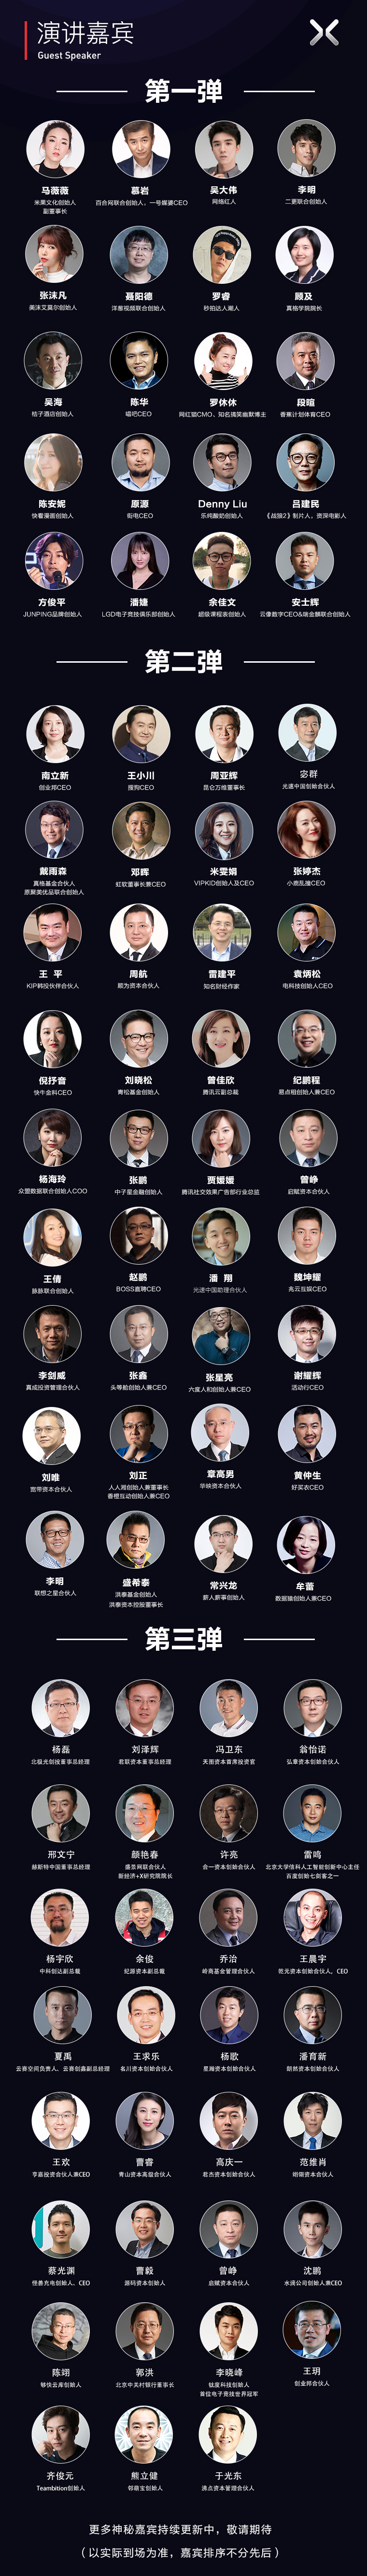 2017创业邦100未来领袖峰会